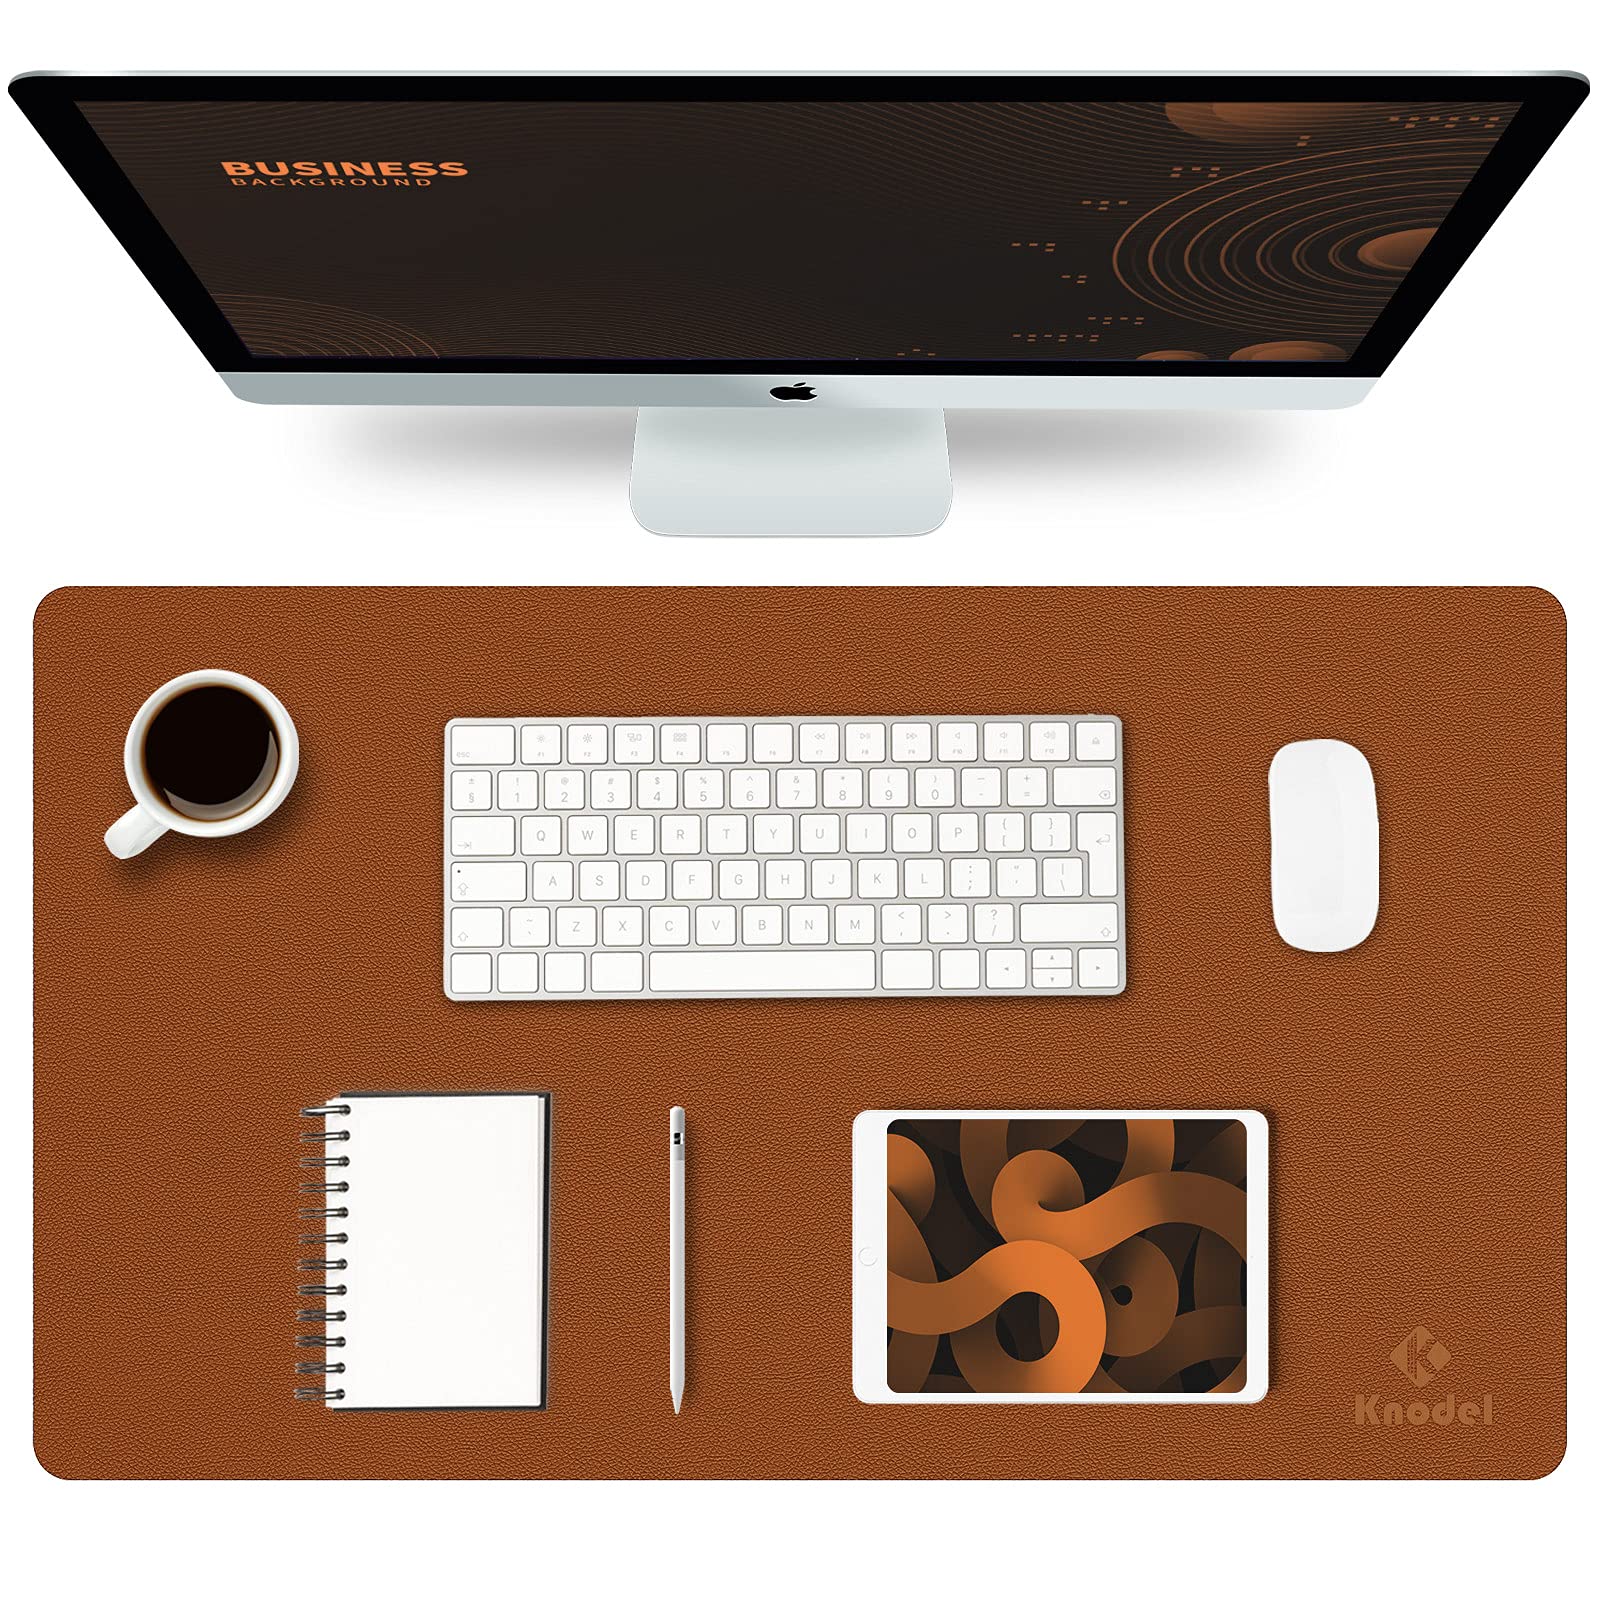 K KNODEL Desk Mat, Mouse Pad, Desk Pad, Waterproof Desk Mat for Desktop, Leather Desk Pad for Keyboard and Mouse, Desk Pad Prote